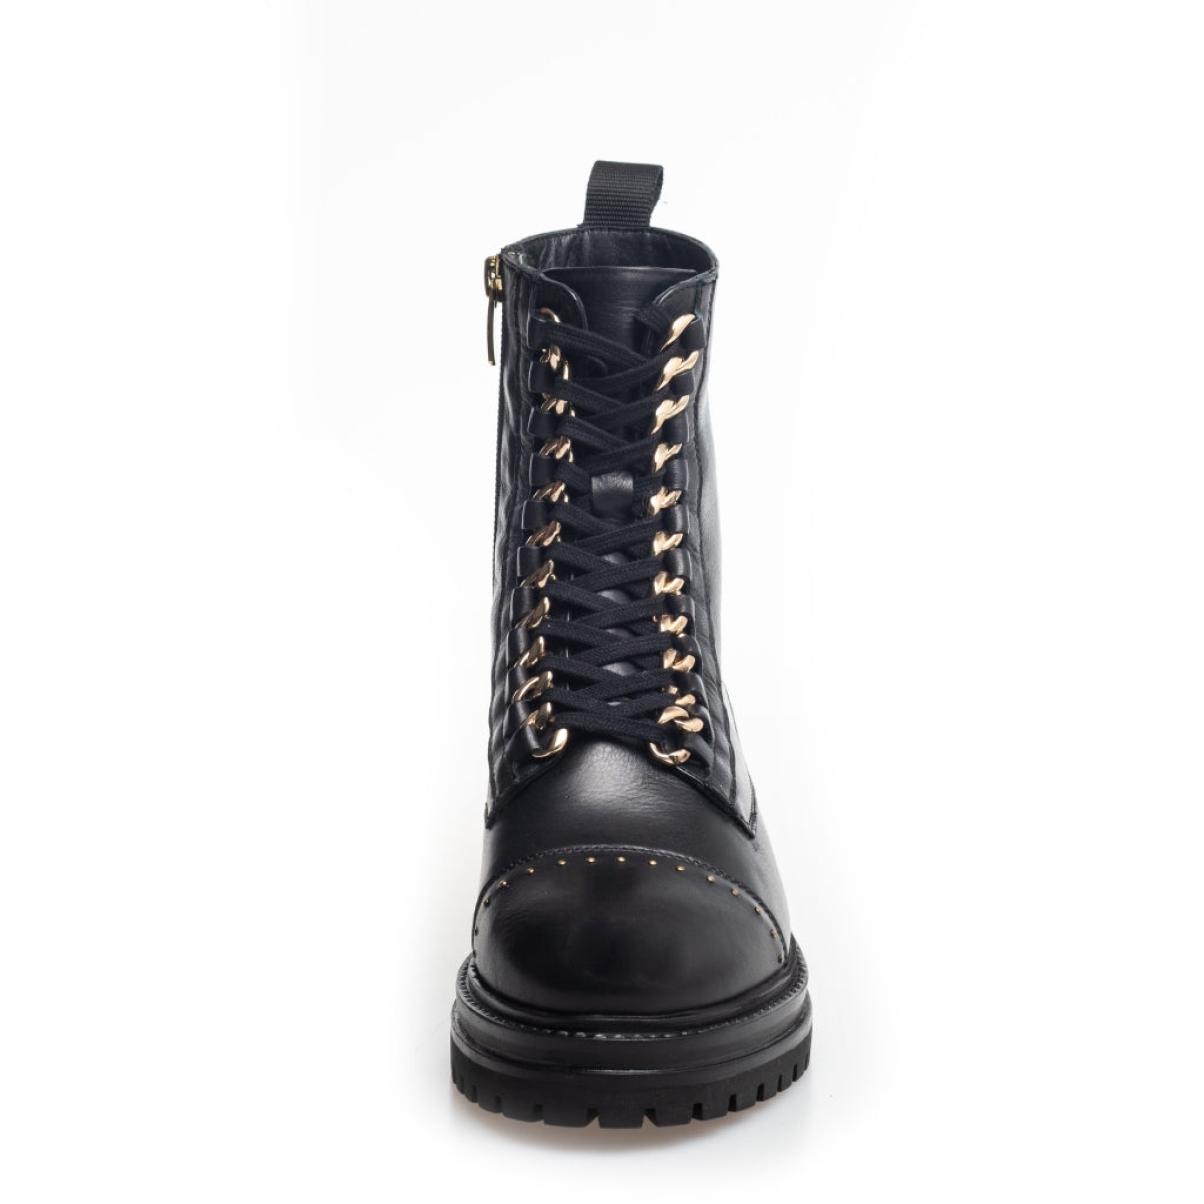 Women Copenhagen Shoes Ankle Boots Compact Rock Studs - Black/Gold - 2